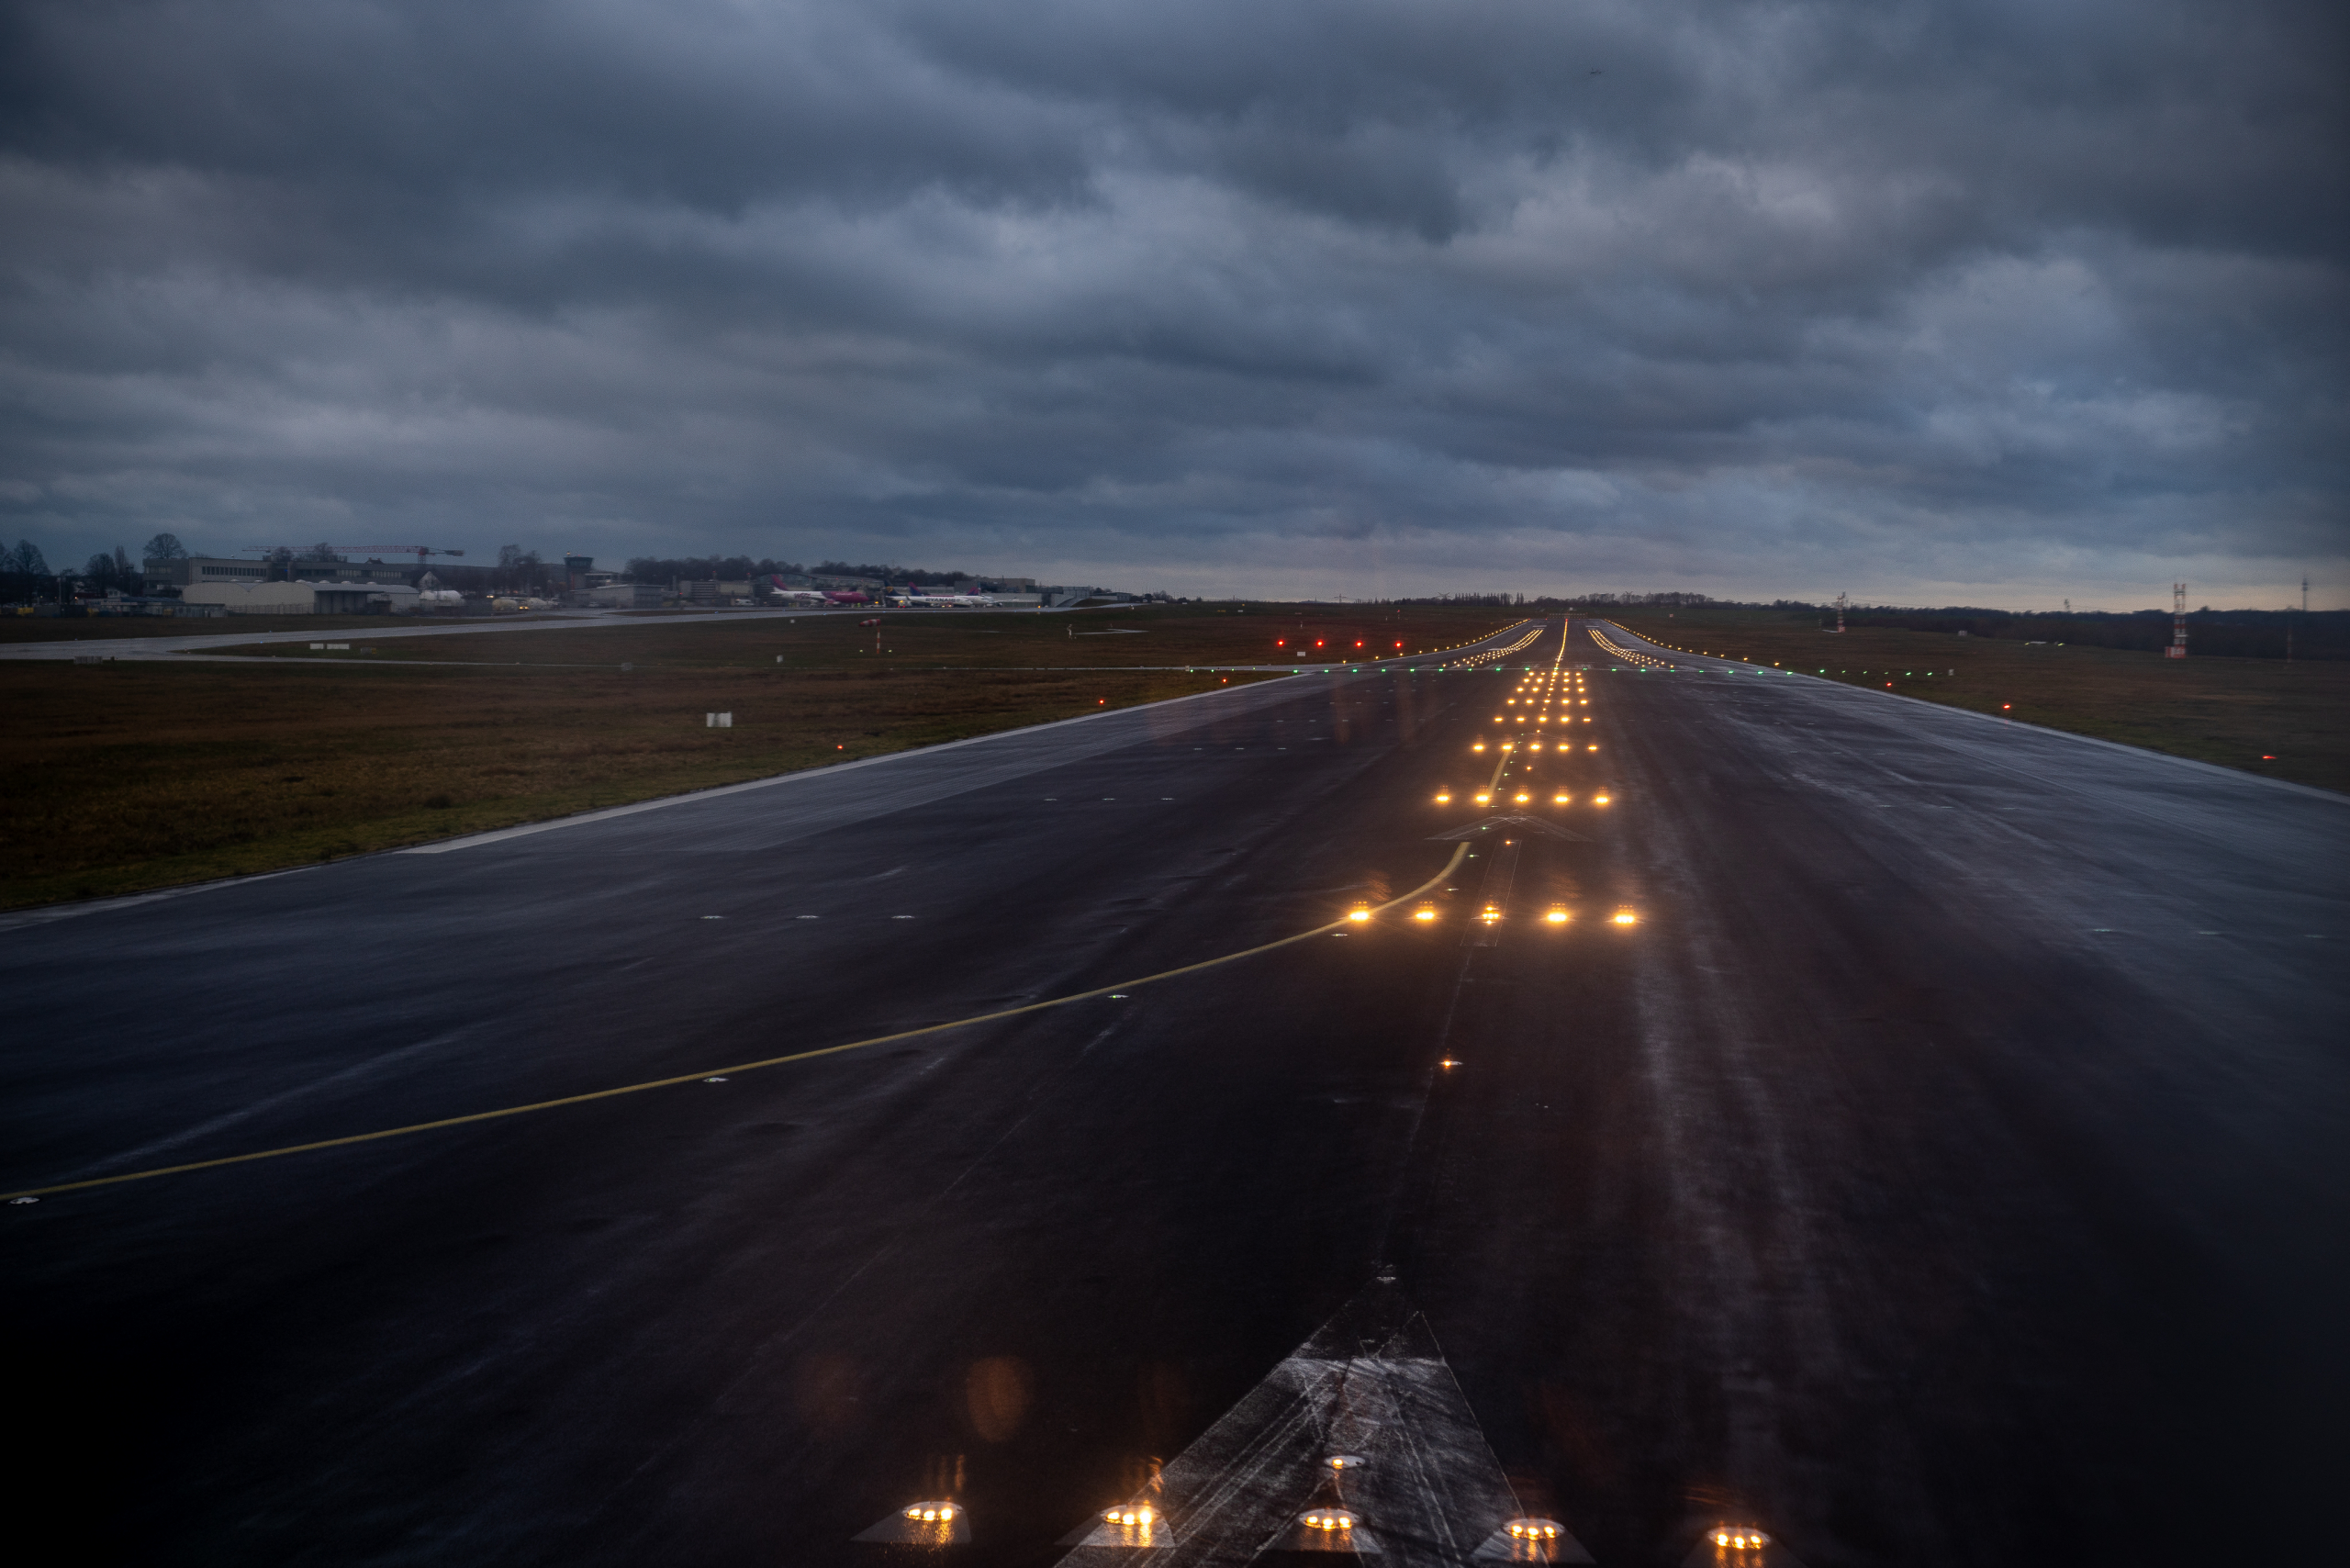 Dortmund Airport - Runway